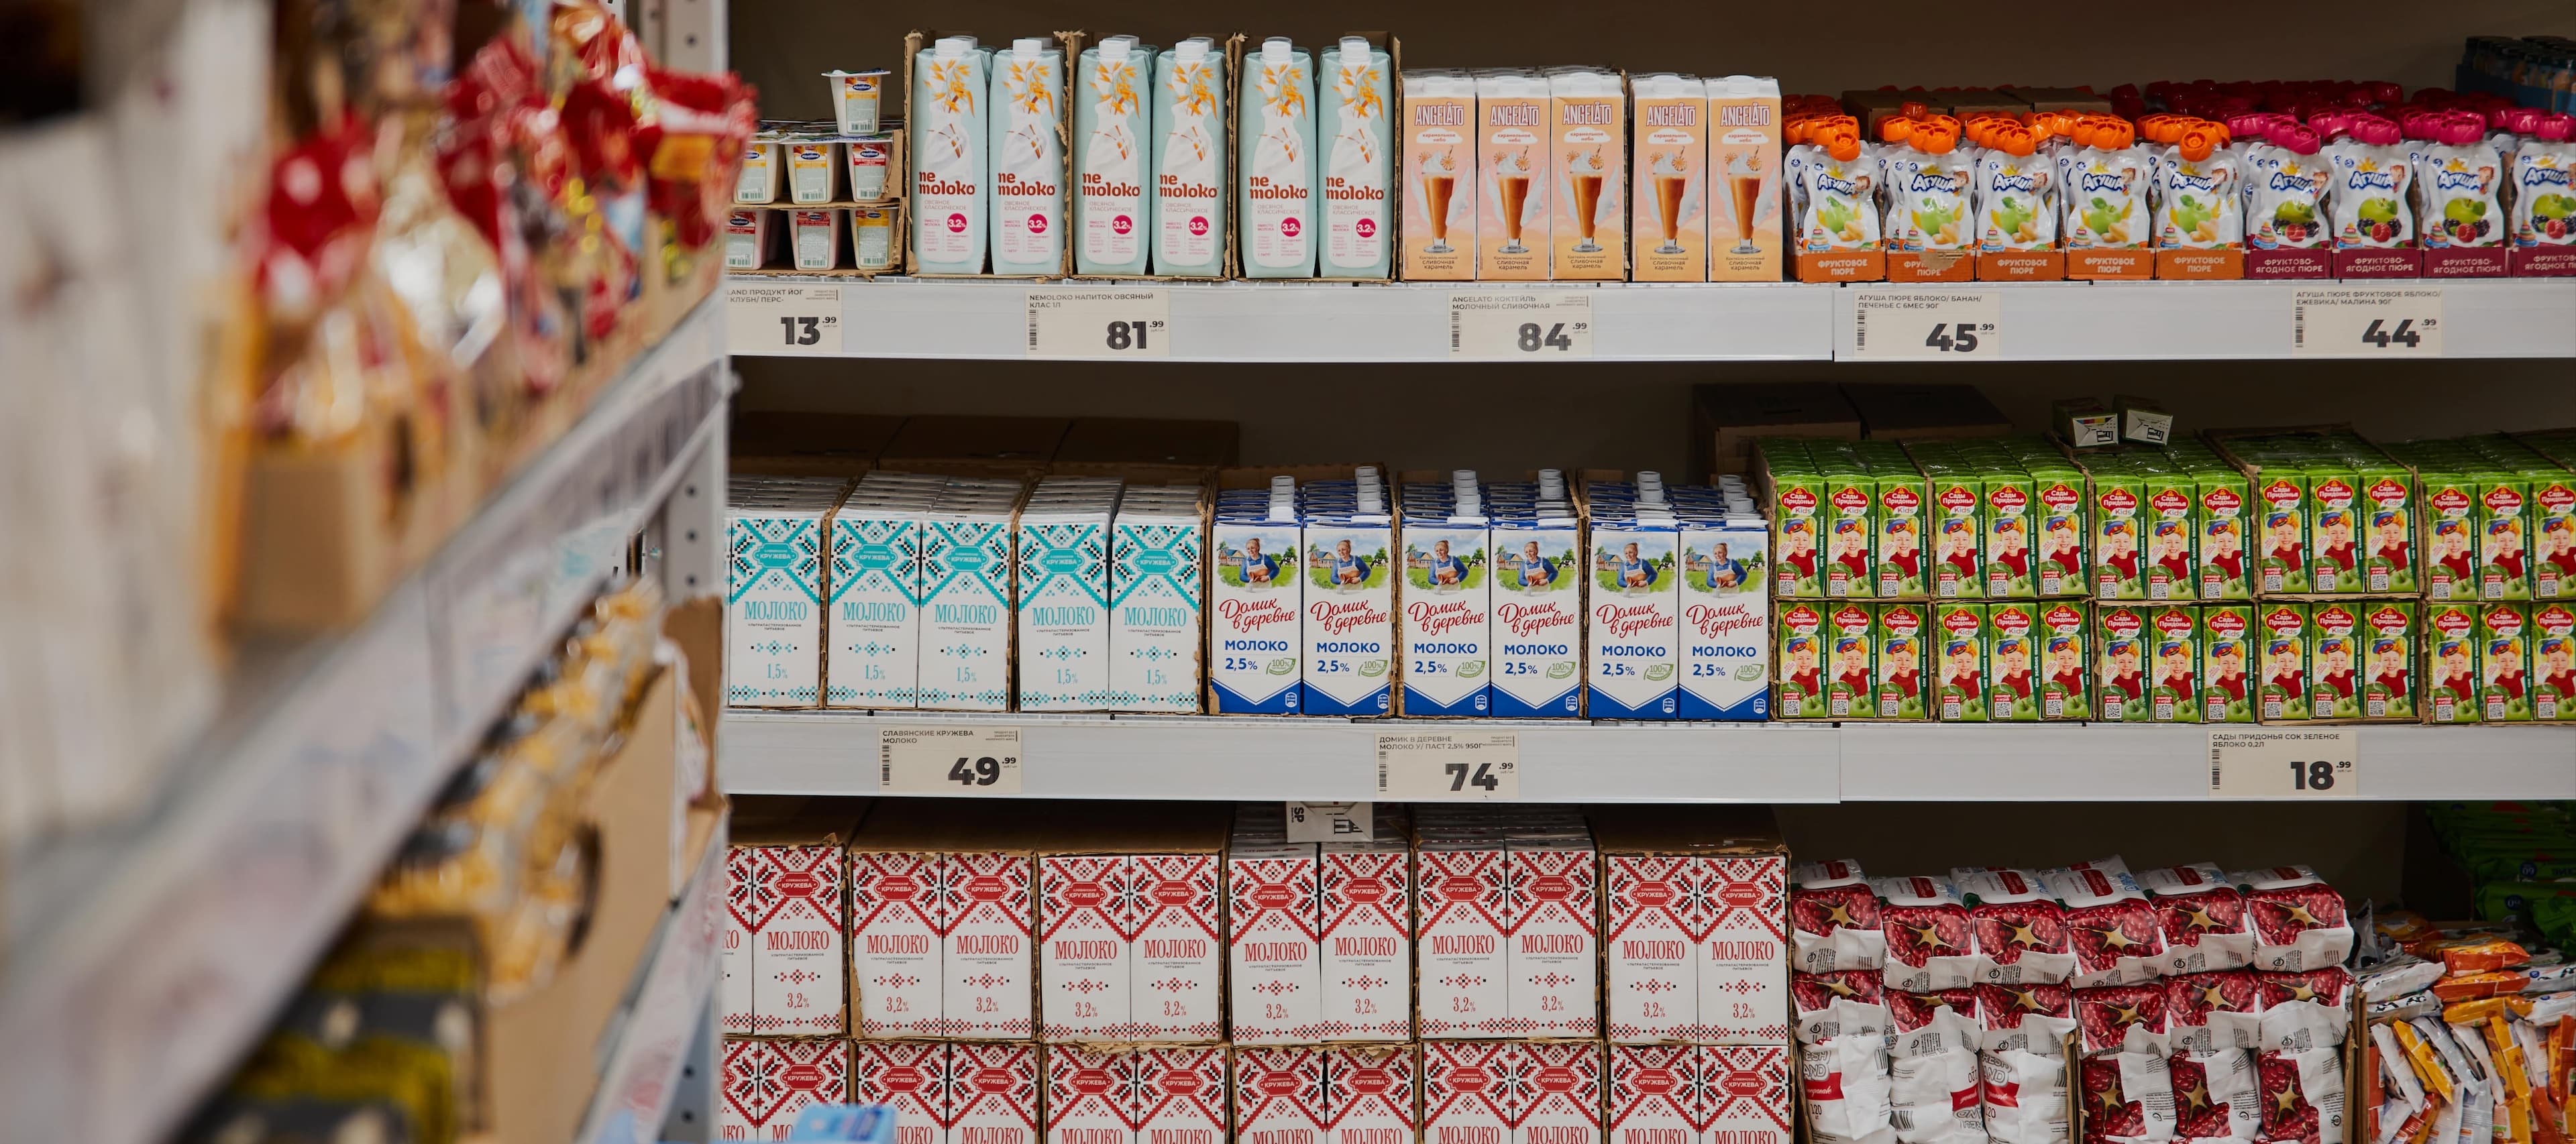 Фото новости: "Мороженое и молочные продукты стали самыми продаваемыми товарами в жестких дискаунтерах"